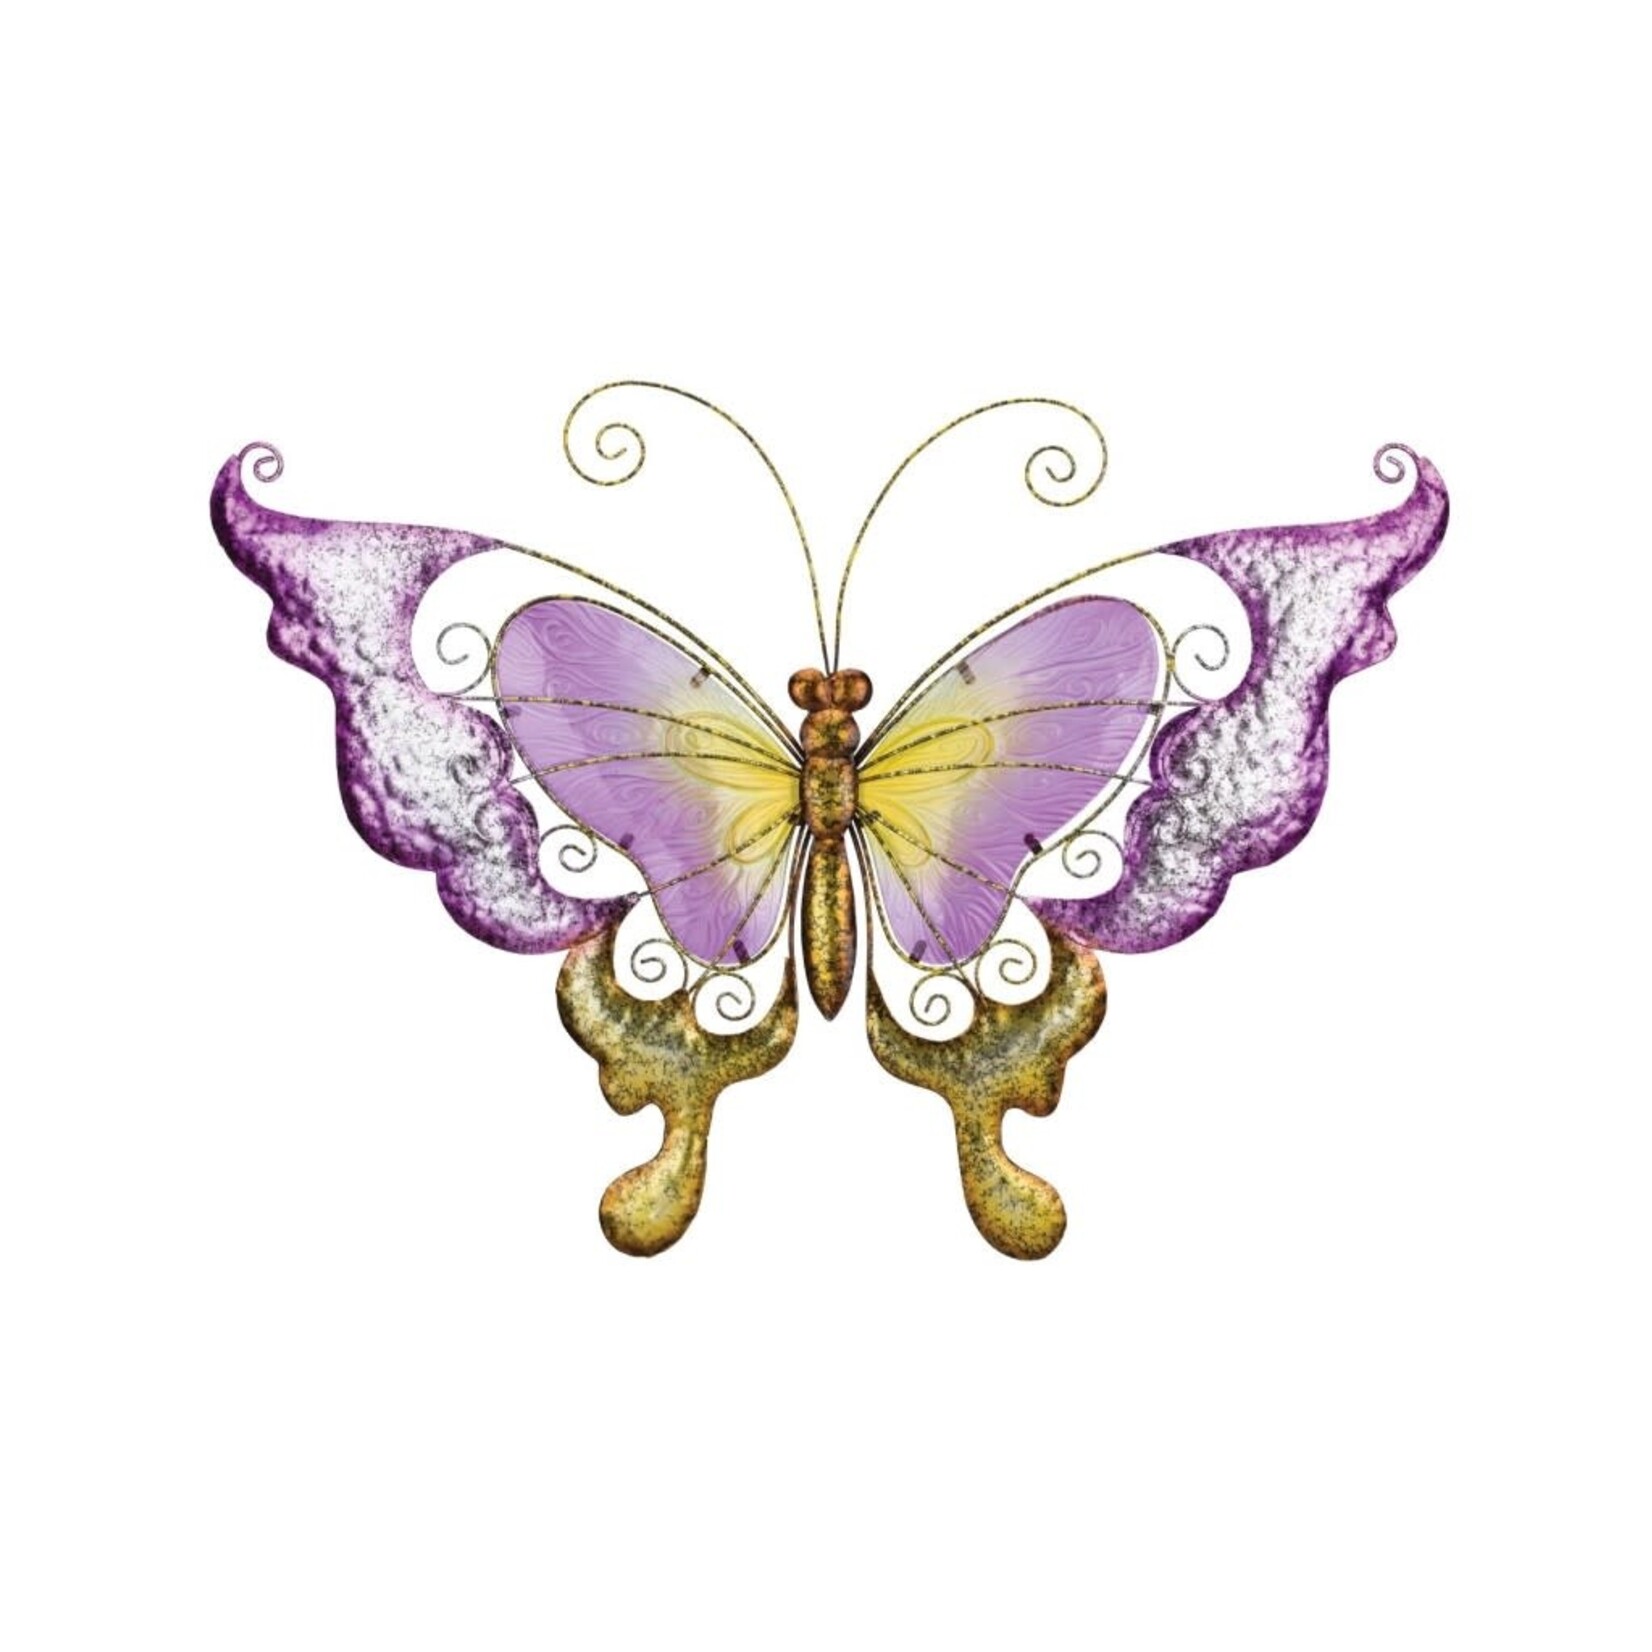 Garden Wall - 28'' Purple Butterfly